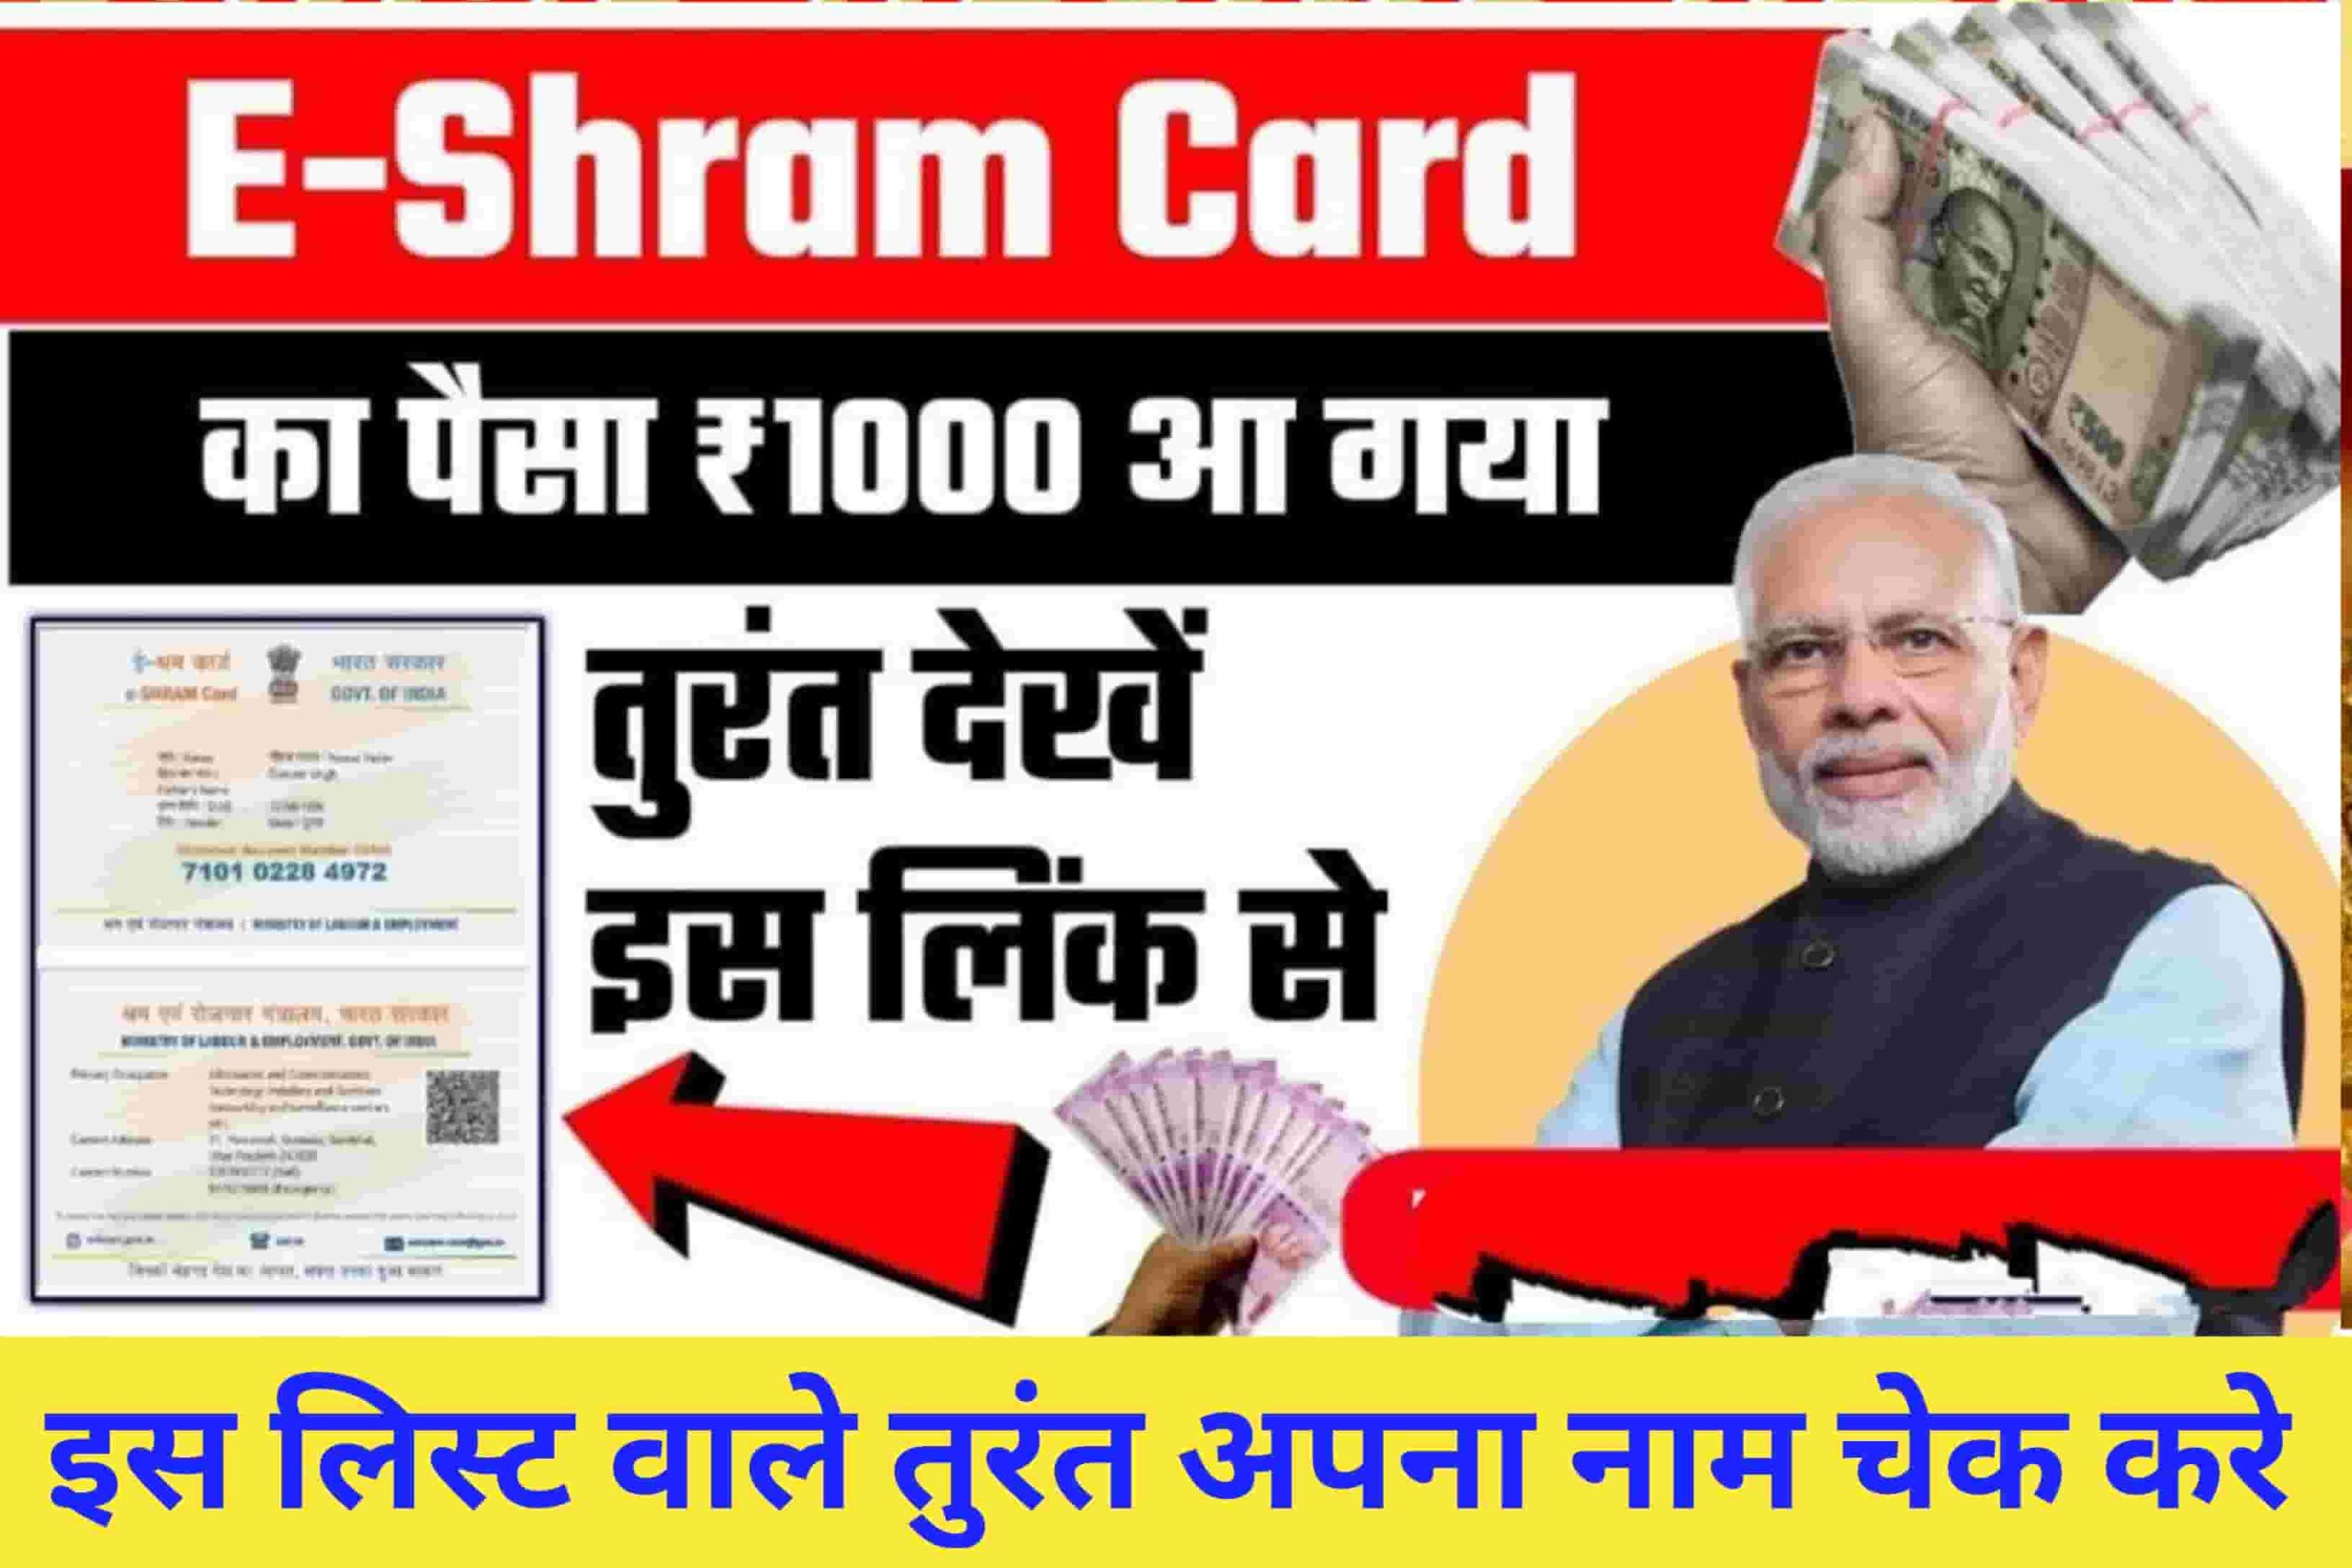 E-SHARM CARD PAYMENT STATUS:-श्रम कार्ड के 1000 रुपए आपके बैंक में आए हैं या नहीं, यहां से तुरंत चेक करें अपना पैसा